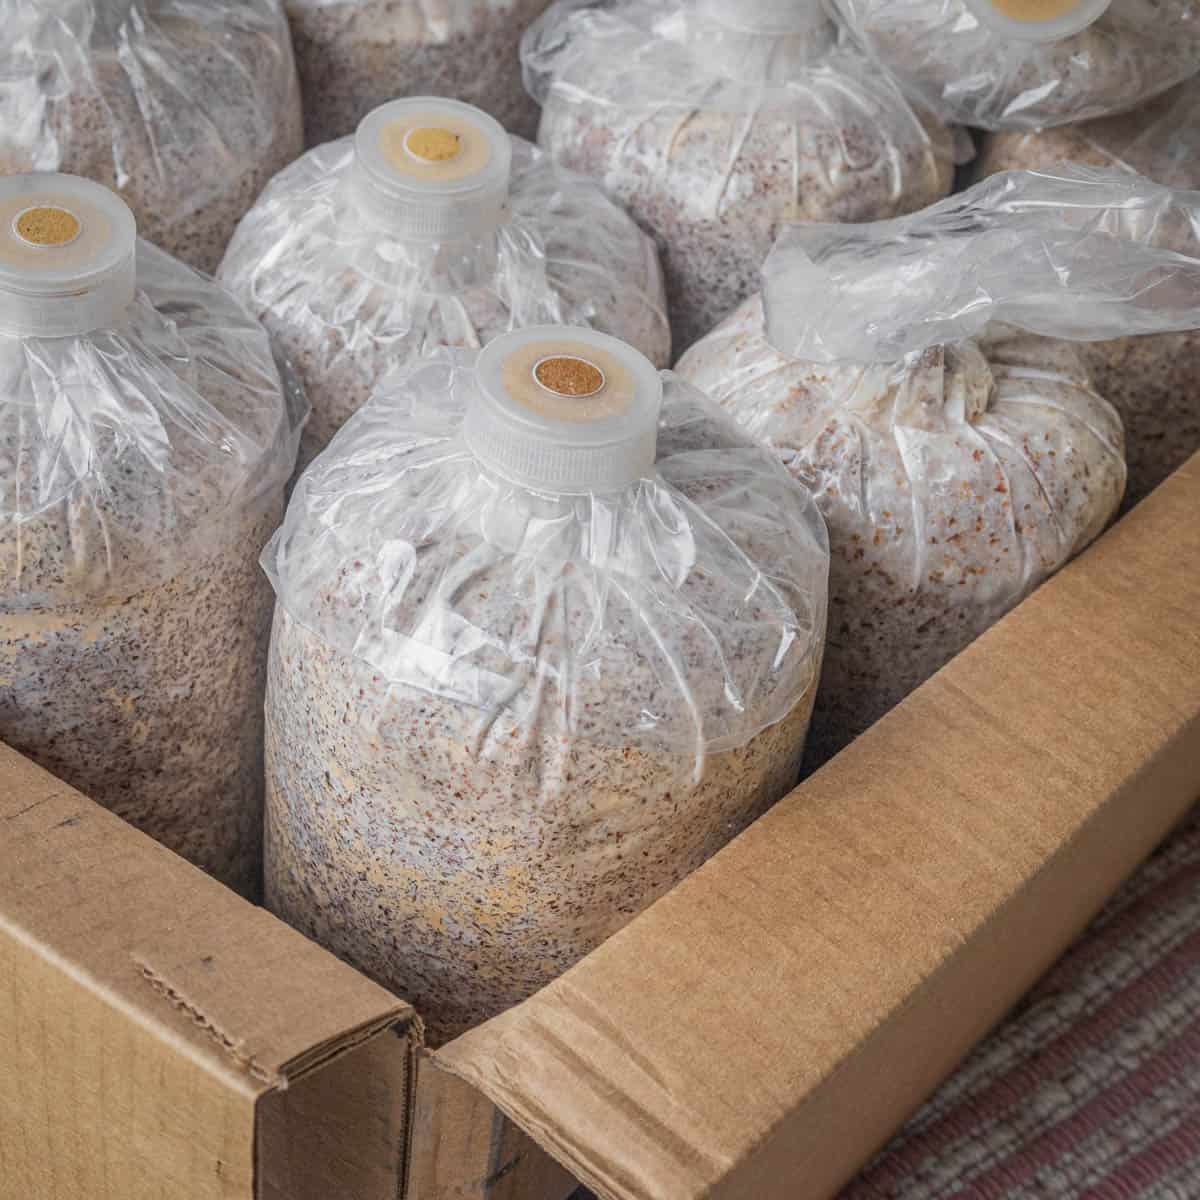 bags of mushroom spawn in a cardboard box.